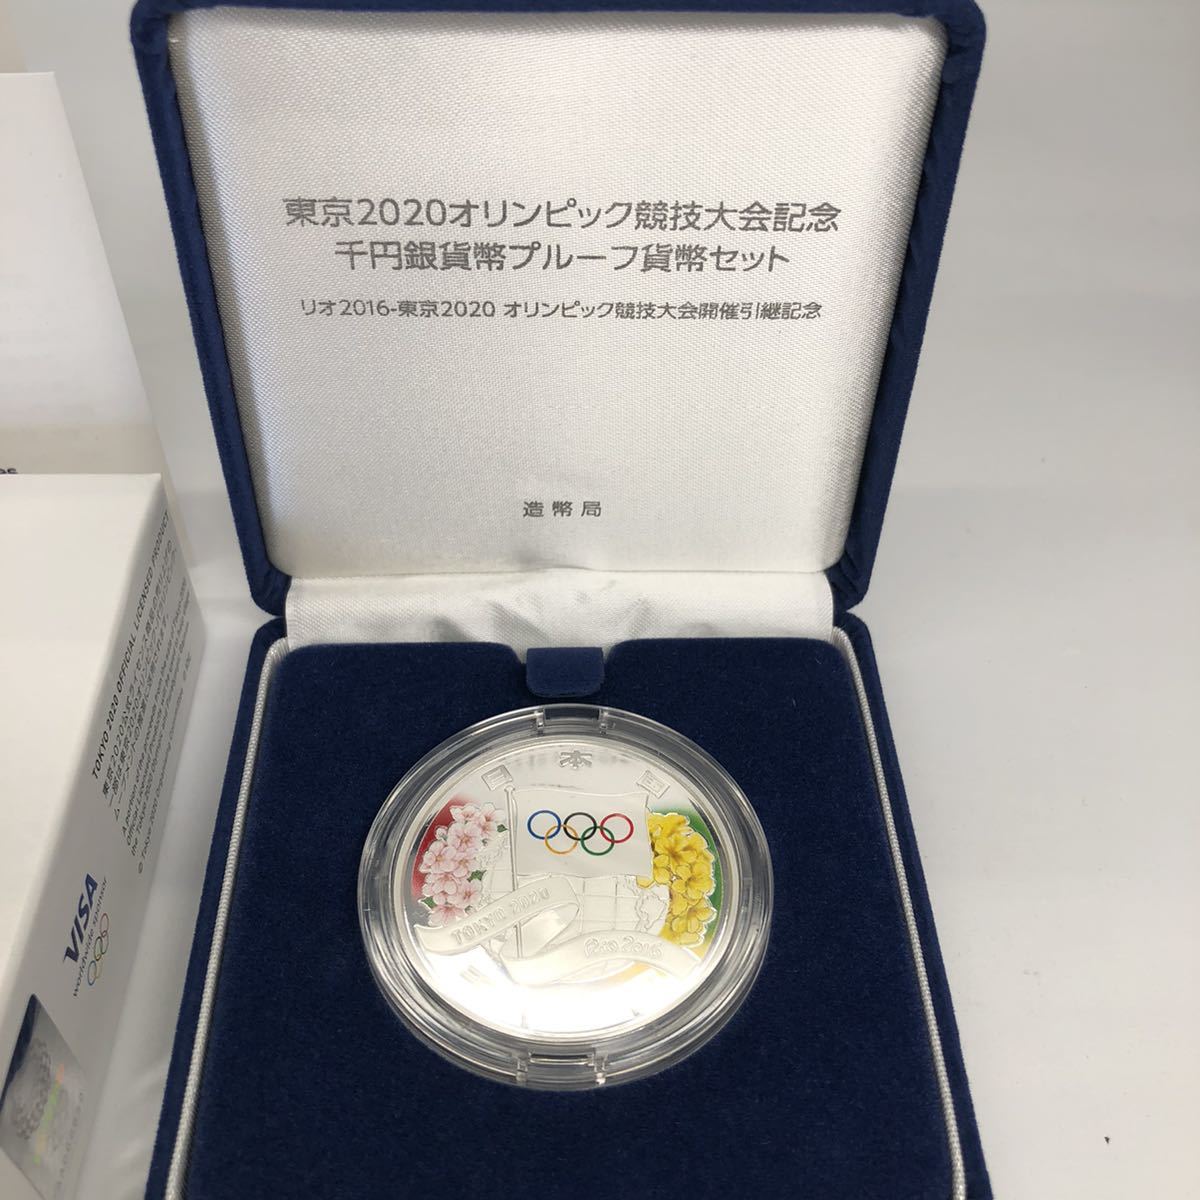 ケース入り東京オリンピック記念 1,000円銀貨幣 プルーフ硬貨